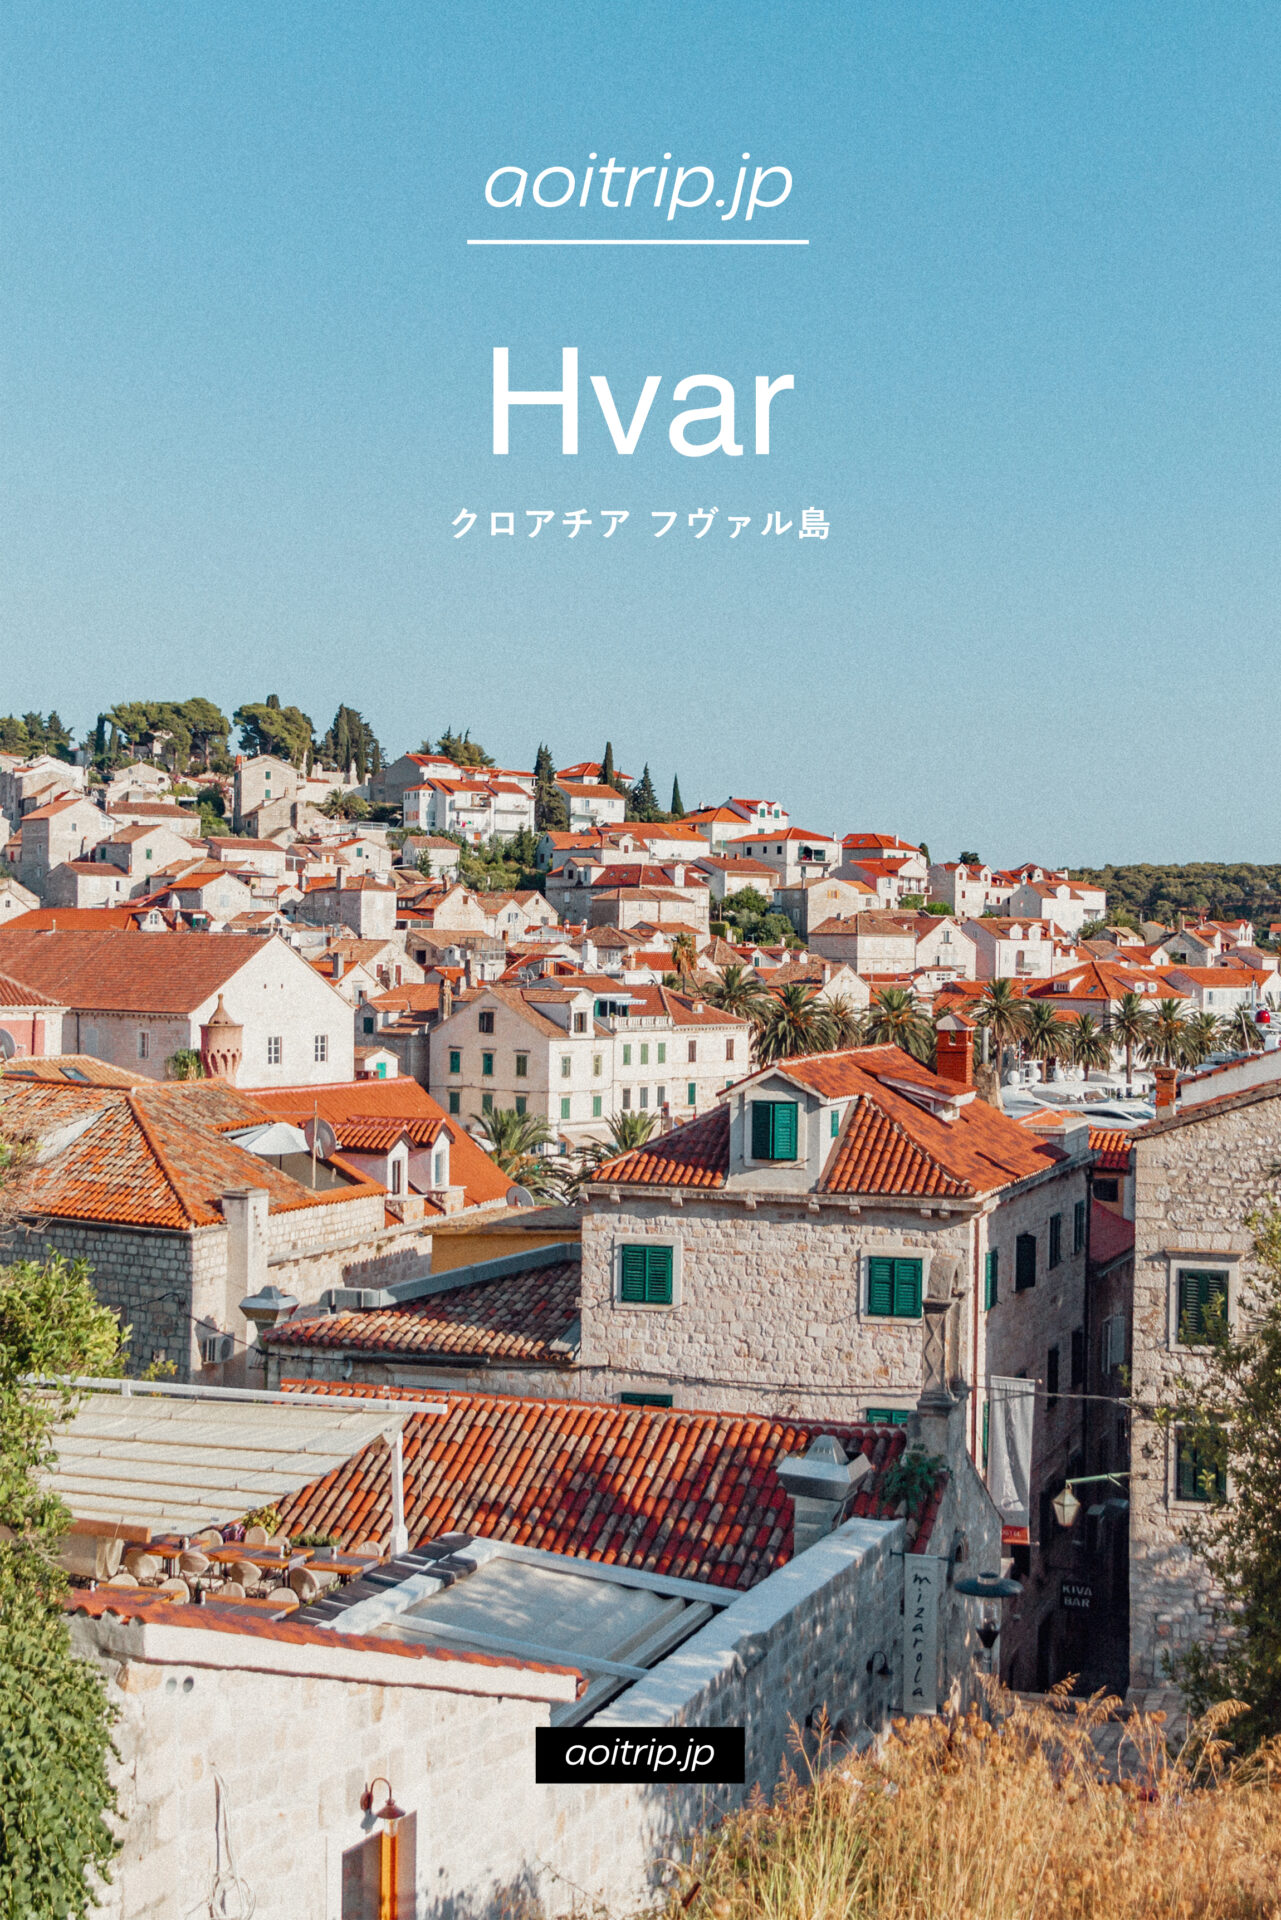 クロアチア フヴァル島観光の見どころ Hvar, Croatia